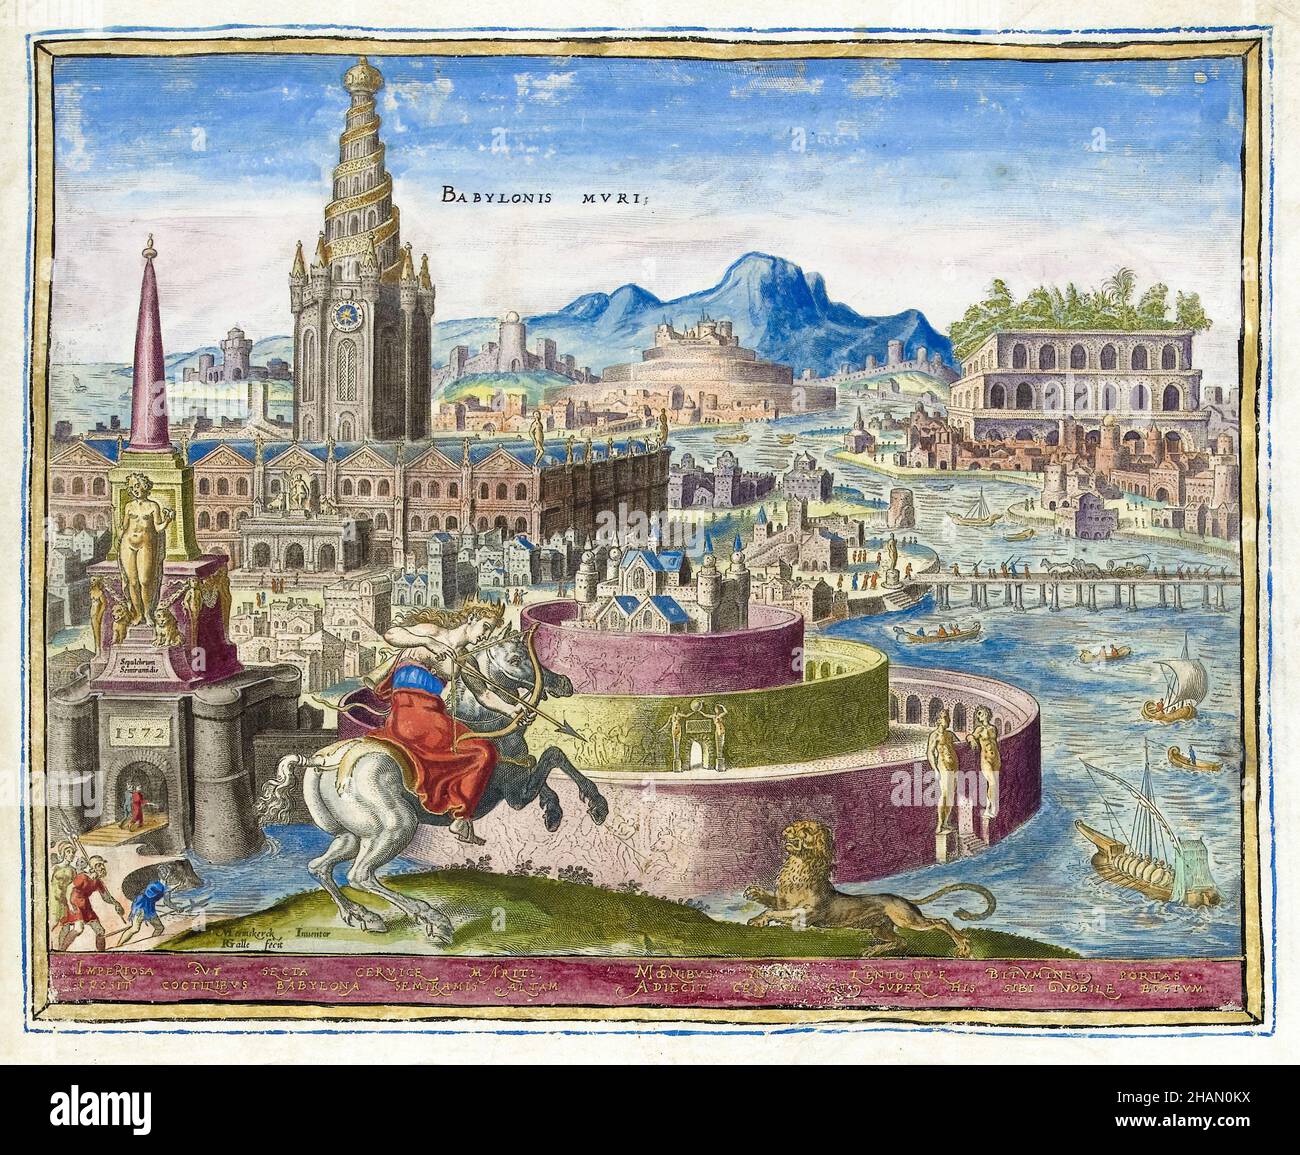 Walls of Babylon, engraving by Philips Galle after Maarten van Heemskerck, 1572 Stock Photo